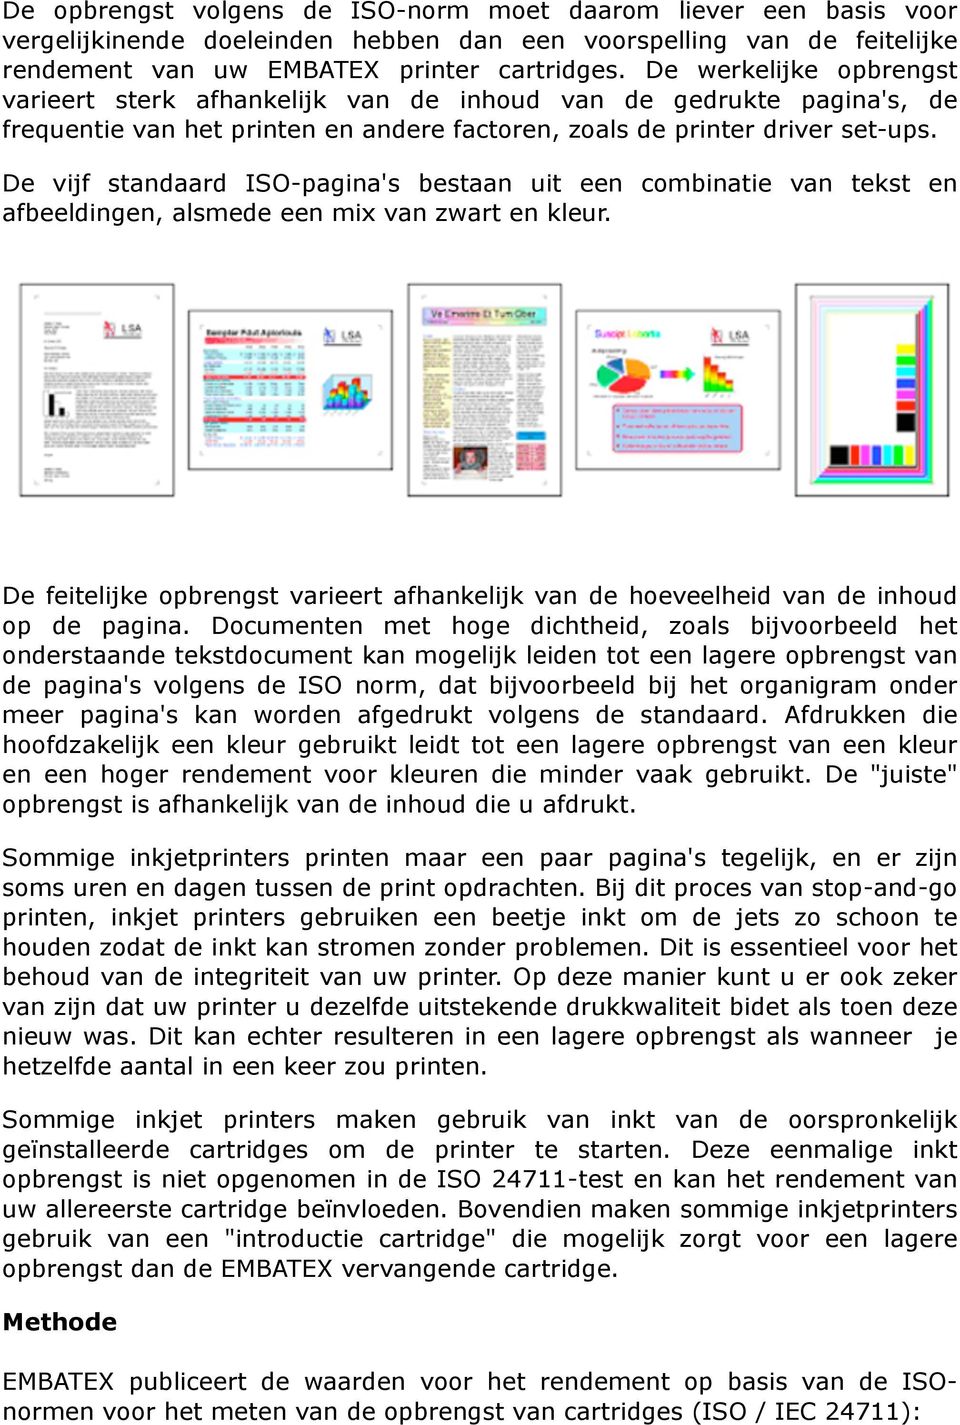 De vijf standaard ISO-pagina's bestaan uit een combinatie van tekst en afbeeldingen, alsmede een mix van zwart en kleur.